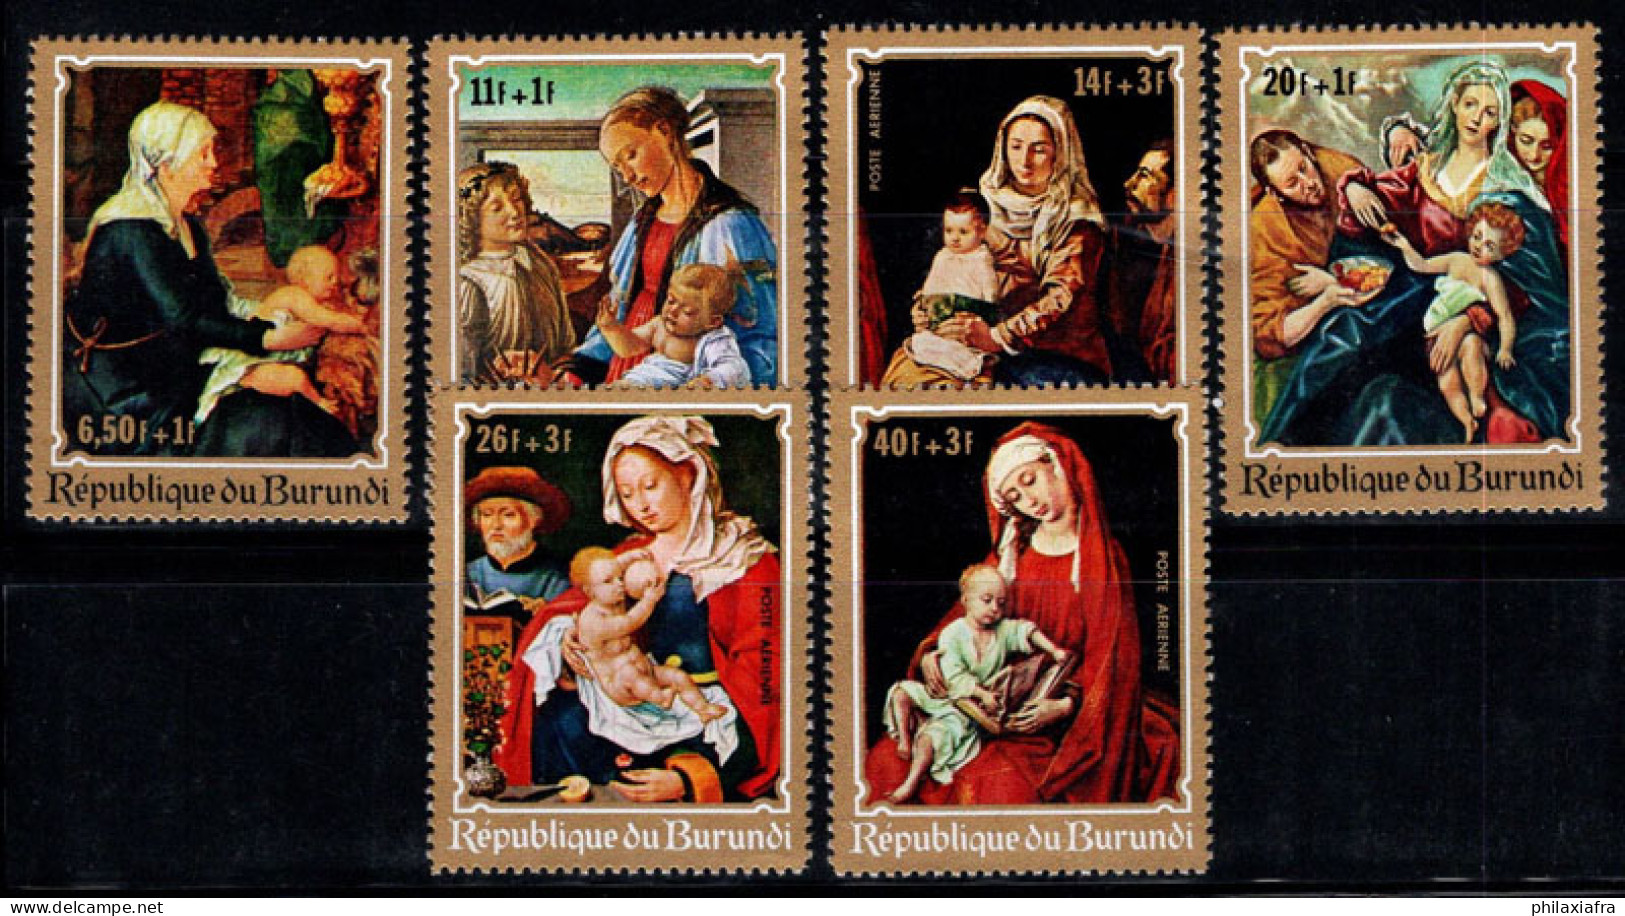 Burundi 1970 Mi. 679-84 A Neuf ** 100% Vierge à L'Enfant,Peintures - Unused Stamps